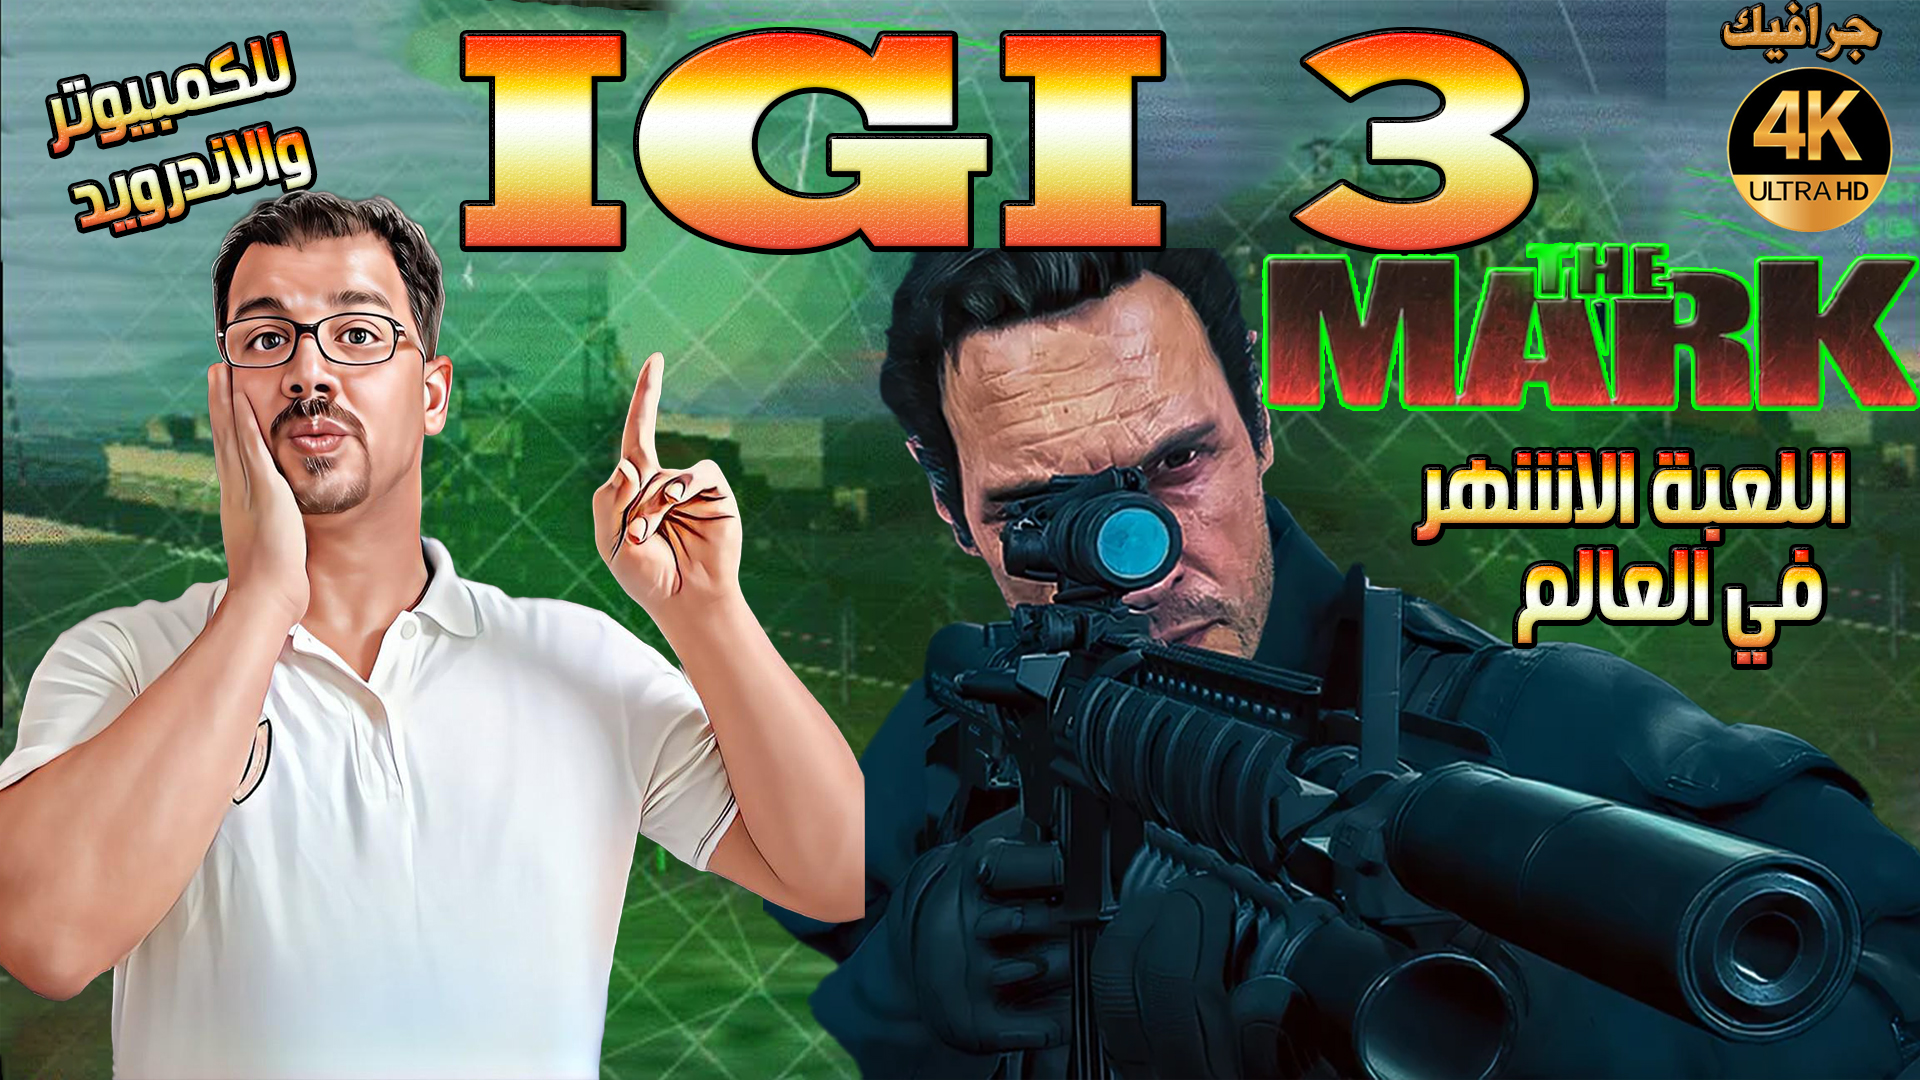 تحميل  لعبة IGI 3 The Mark الاصلية الجزء الثالث بجرافيك  4K  اللعبة الاشهر والاكثر تحميلا في العالم مع شفرة تهكير الاسلحة والدم وطريقة اللعب